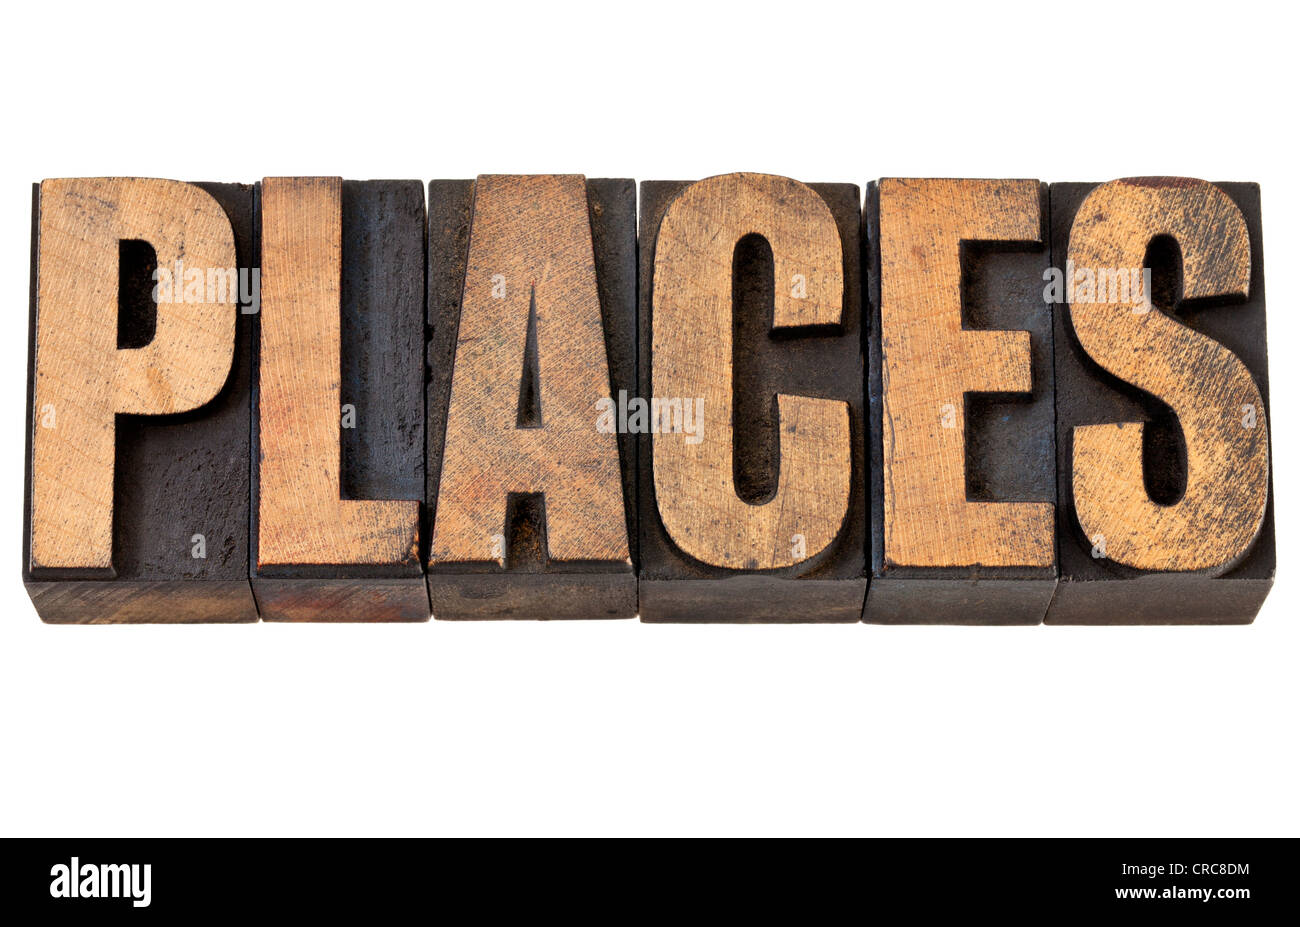 Lugares - viajes concepto - palabra aislada en vintage tipografía tipo de madera Foto de stock